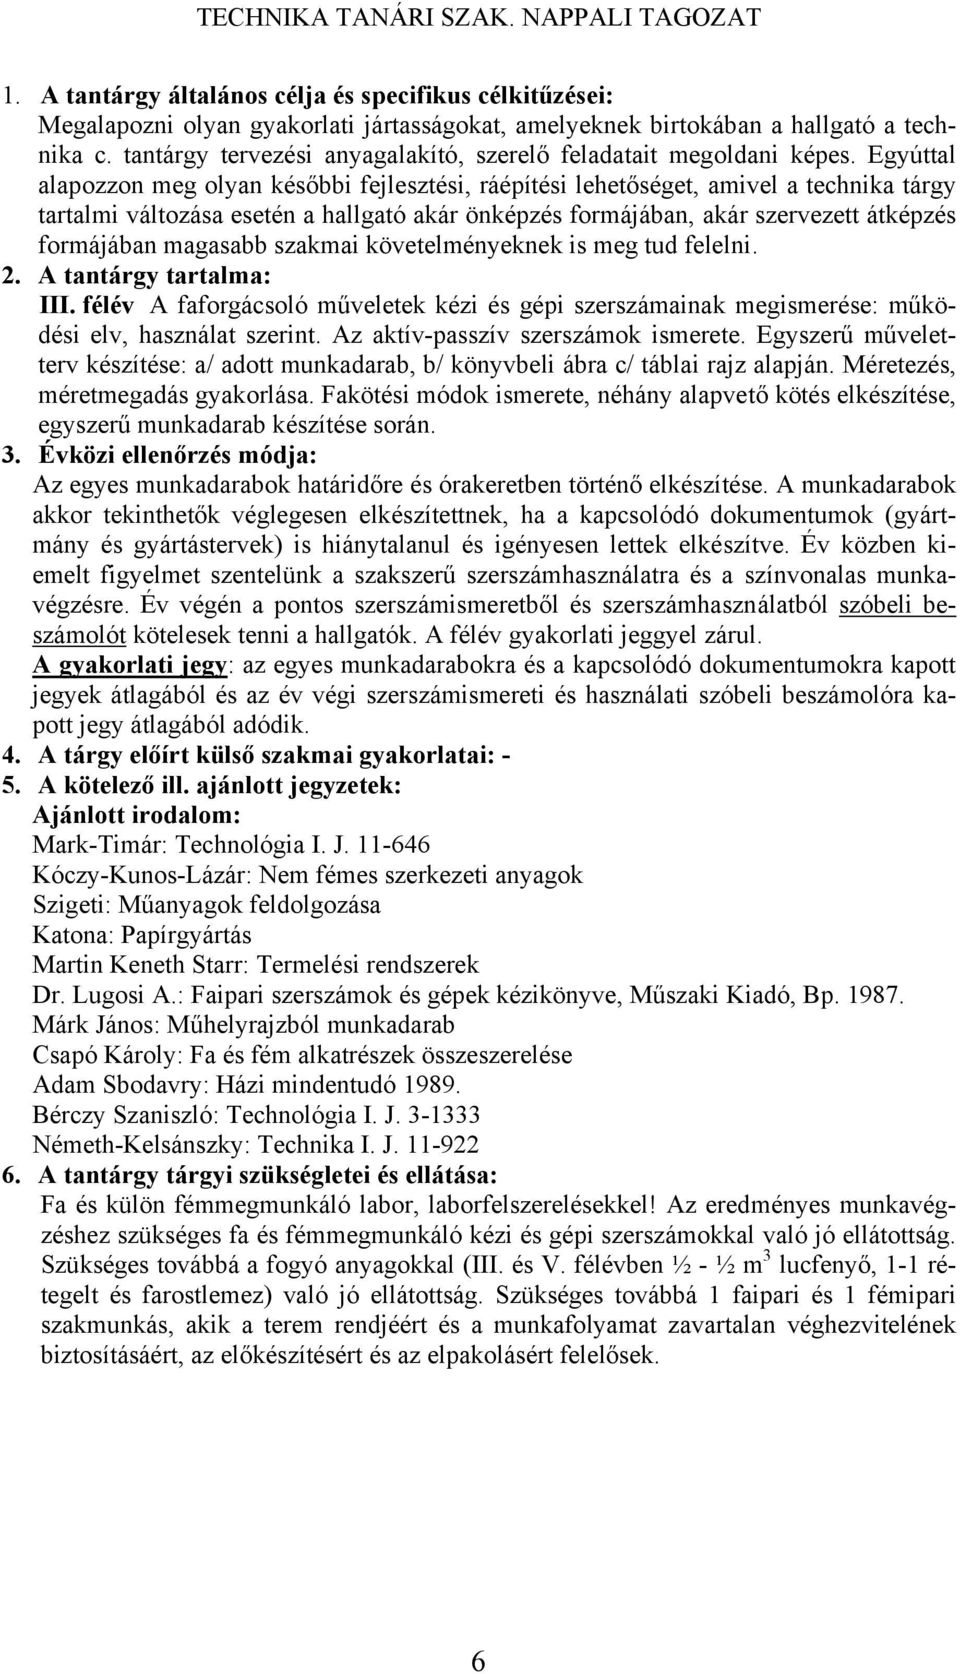 TECHNIKA TANÁRI SZAK. NAPPALI TAGOZAT - PDF Ingyenes letöltés